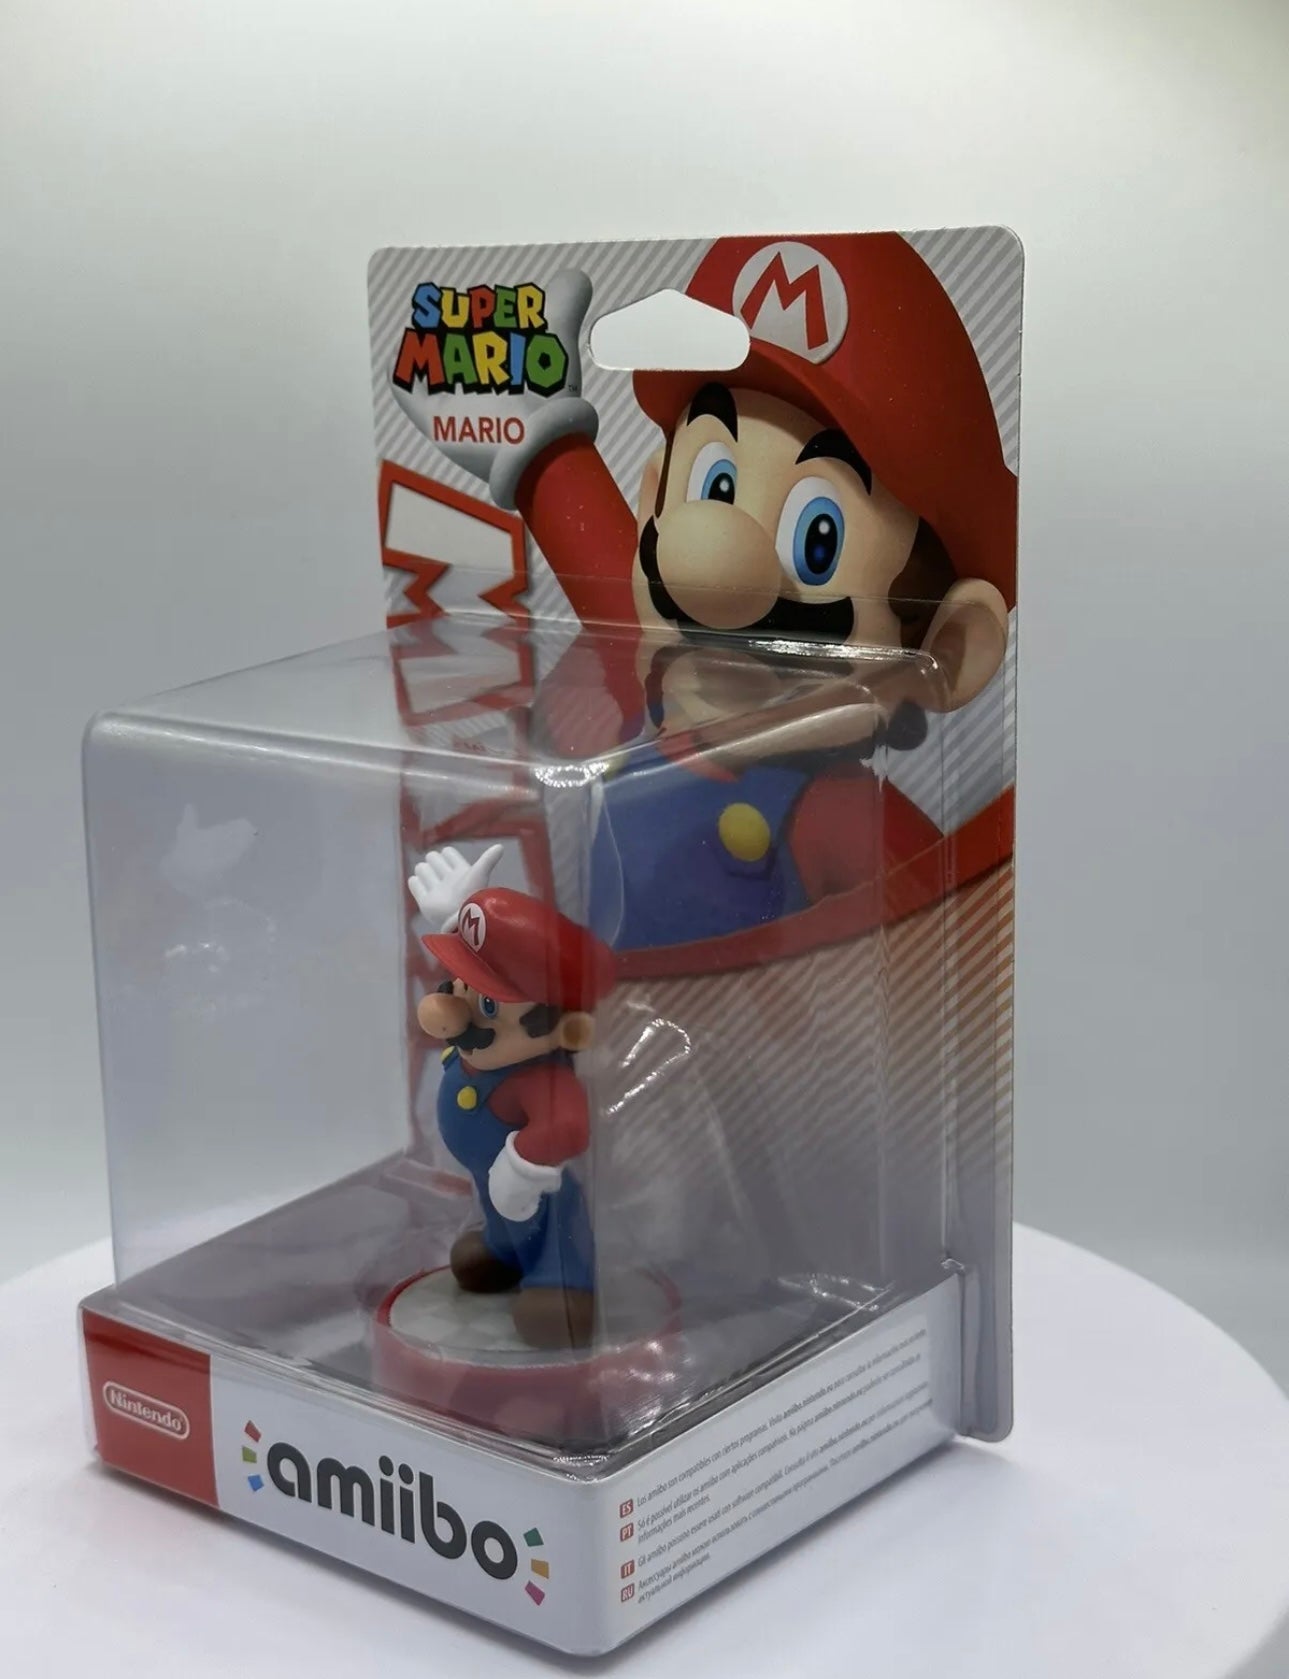 Super Mario - Mario Amiibo